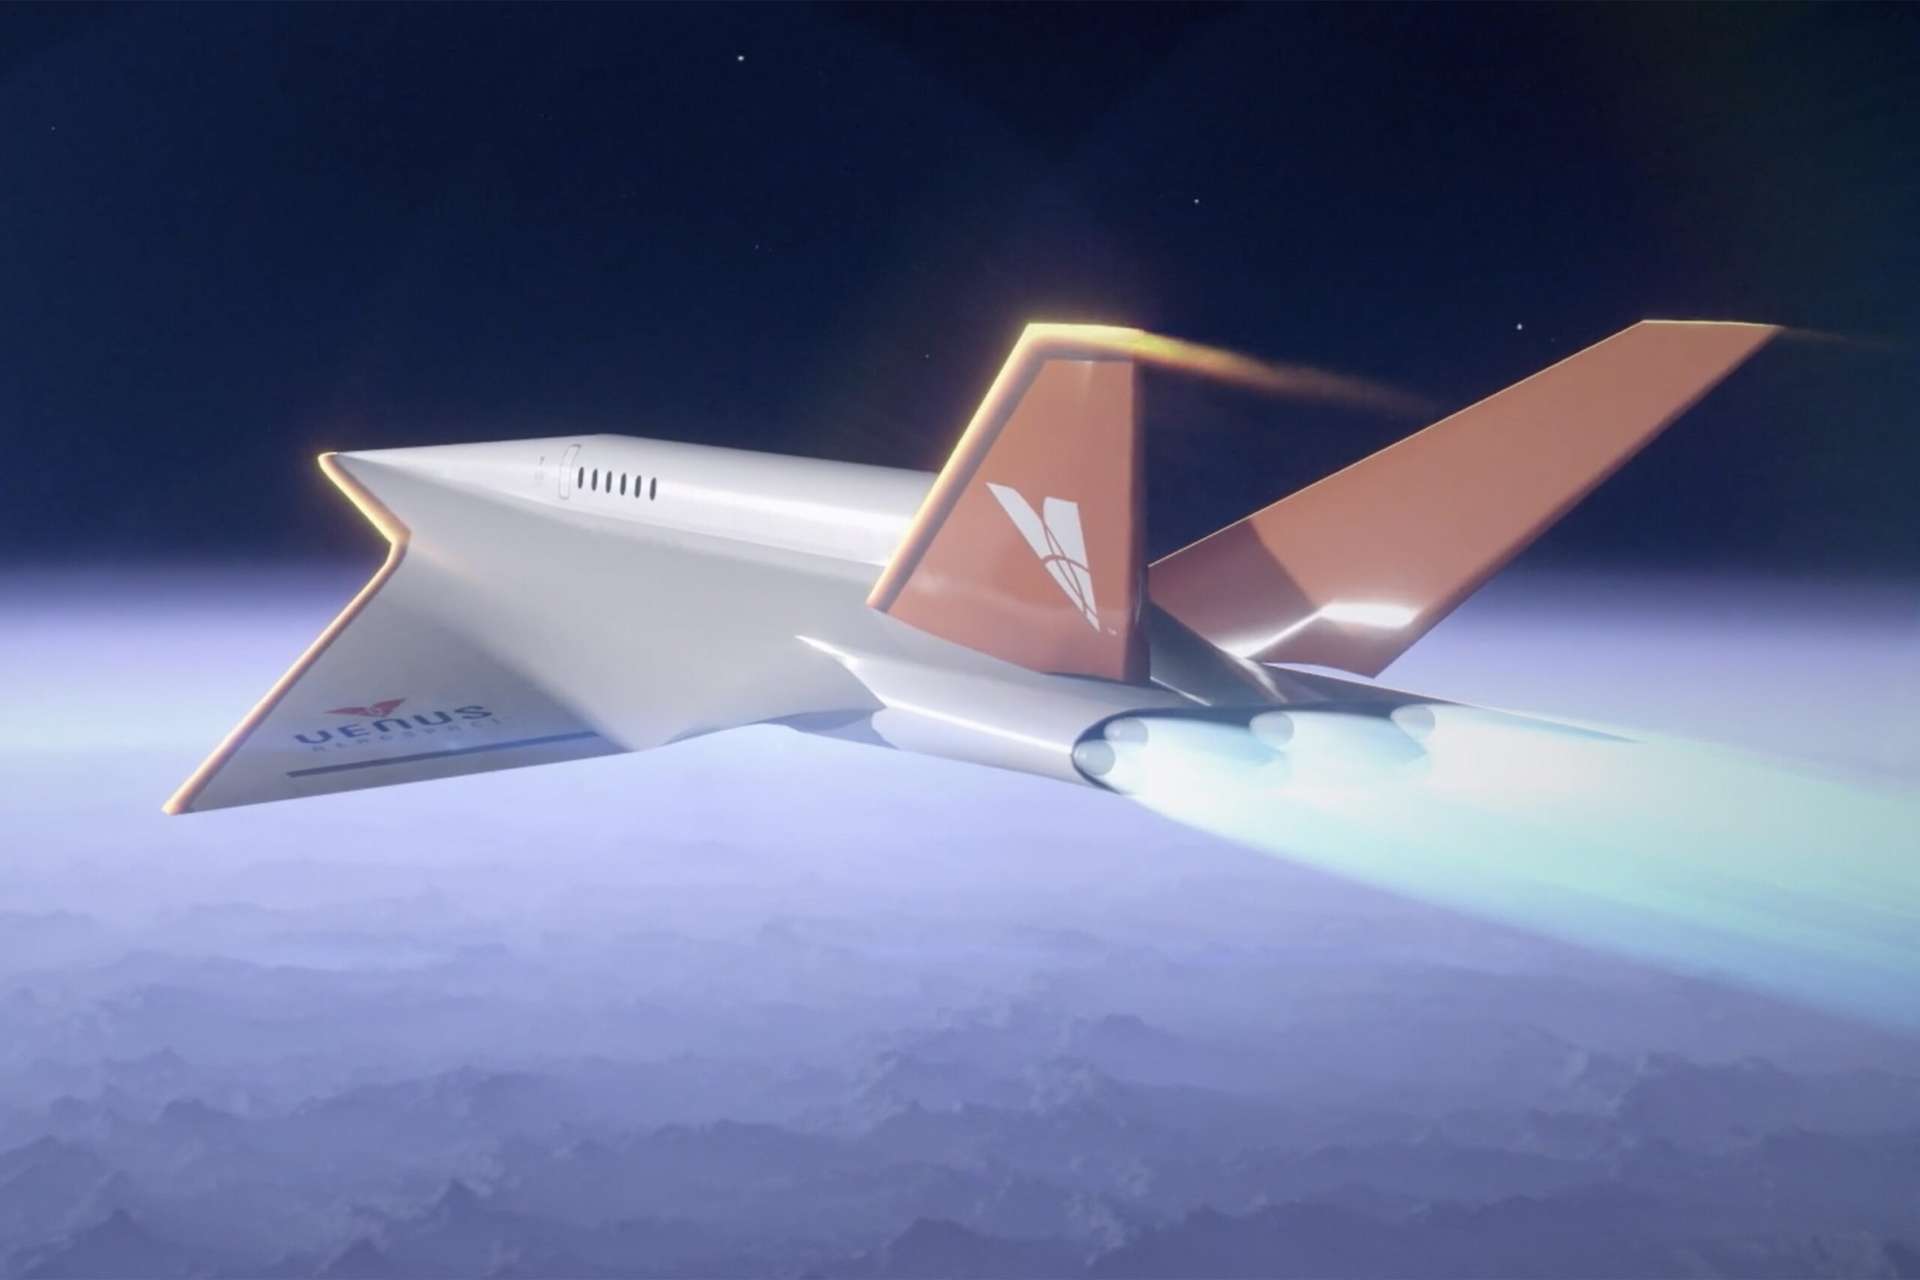 Stargazer : test réussi pour le moteur qui propulsera l'avion